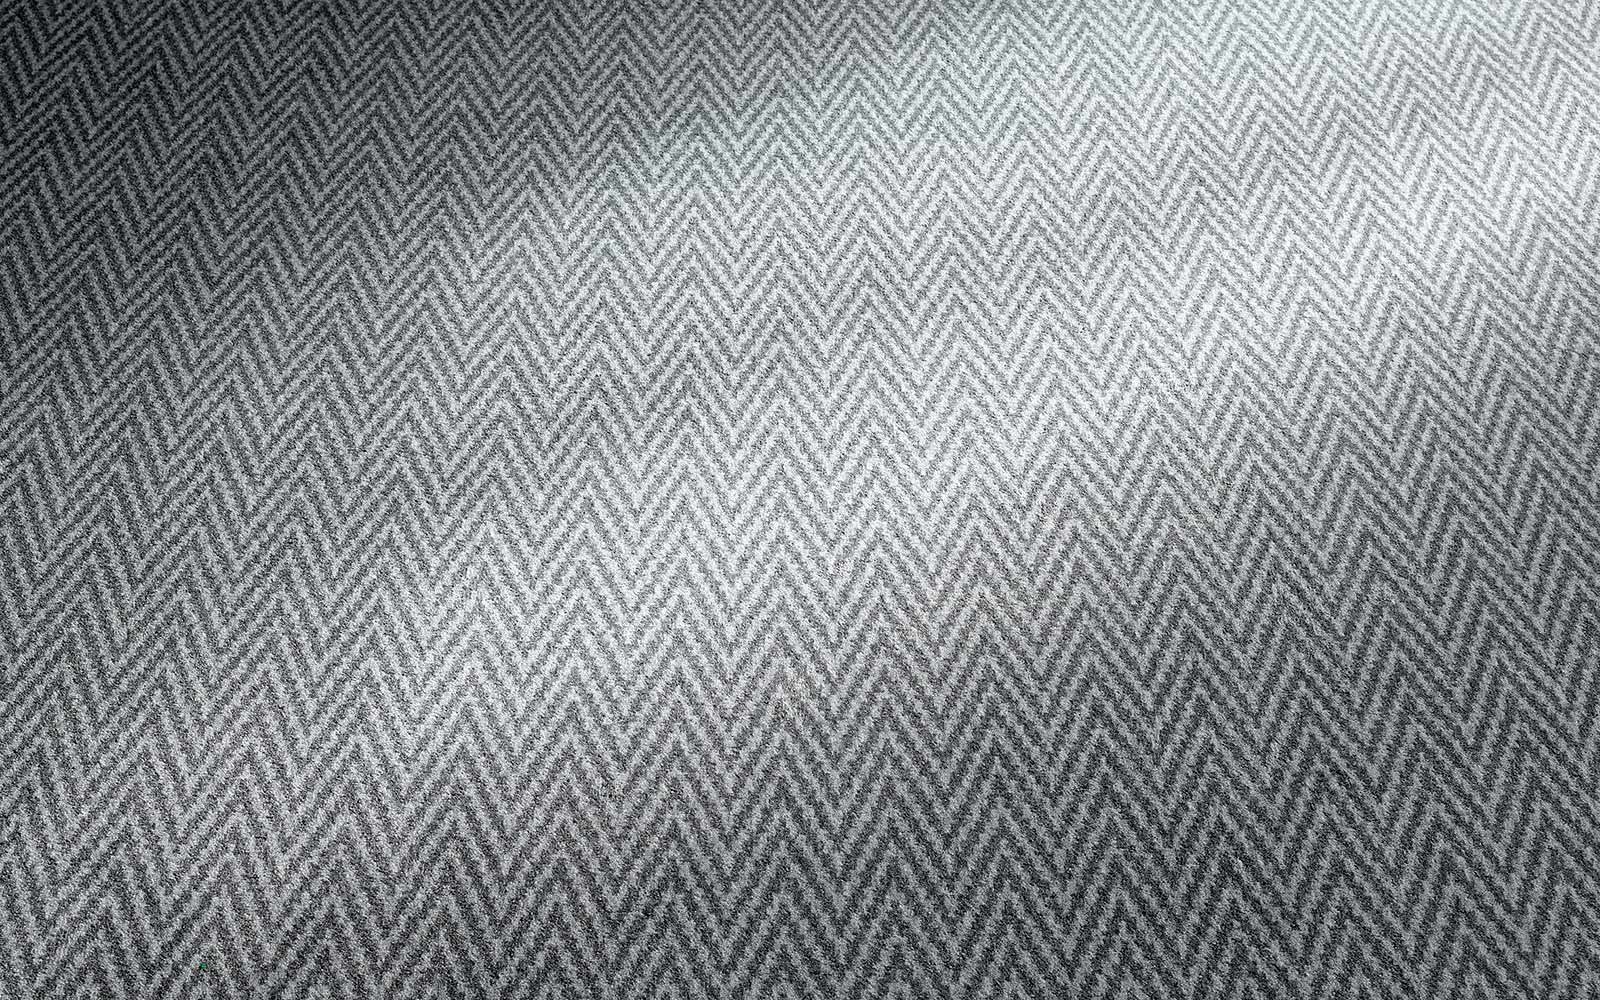 Grau strukturierter Teppichboden